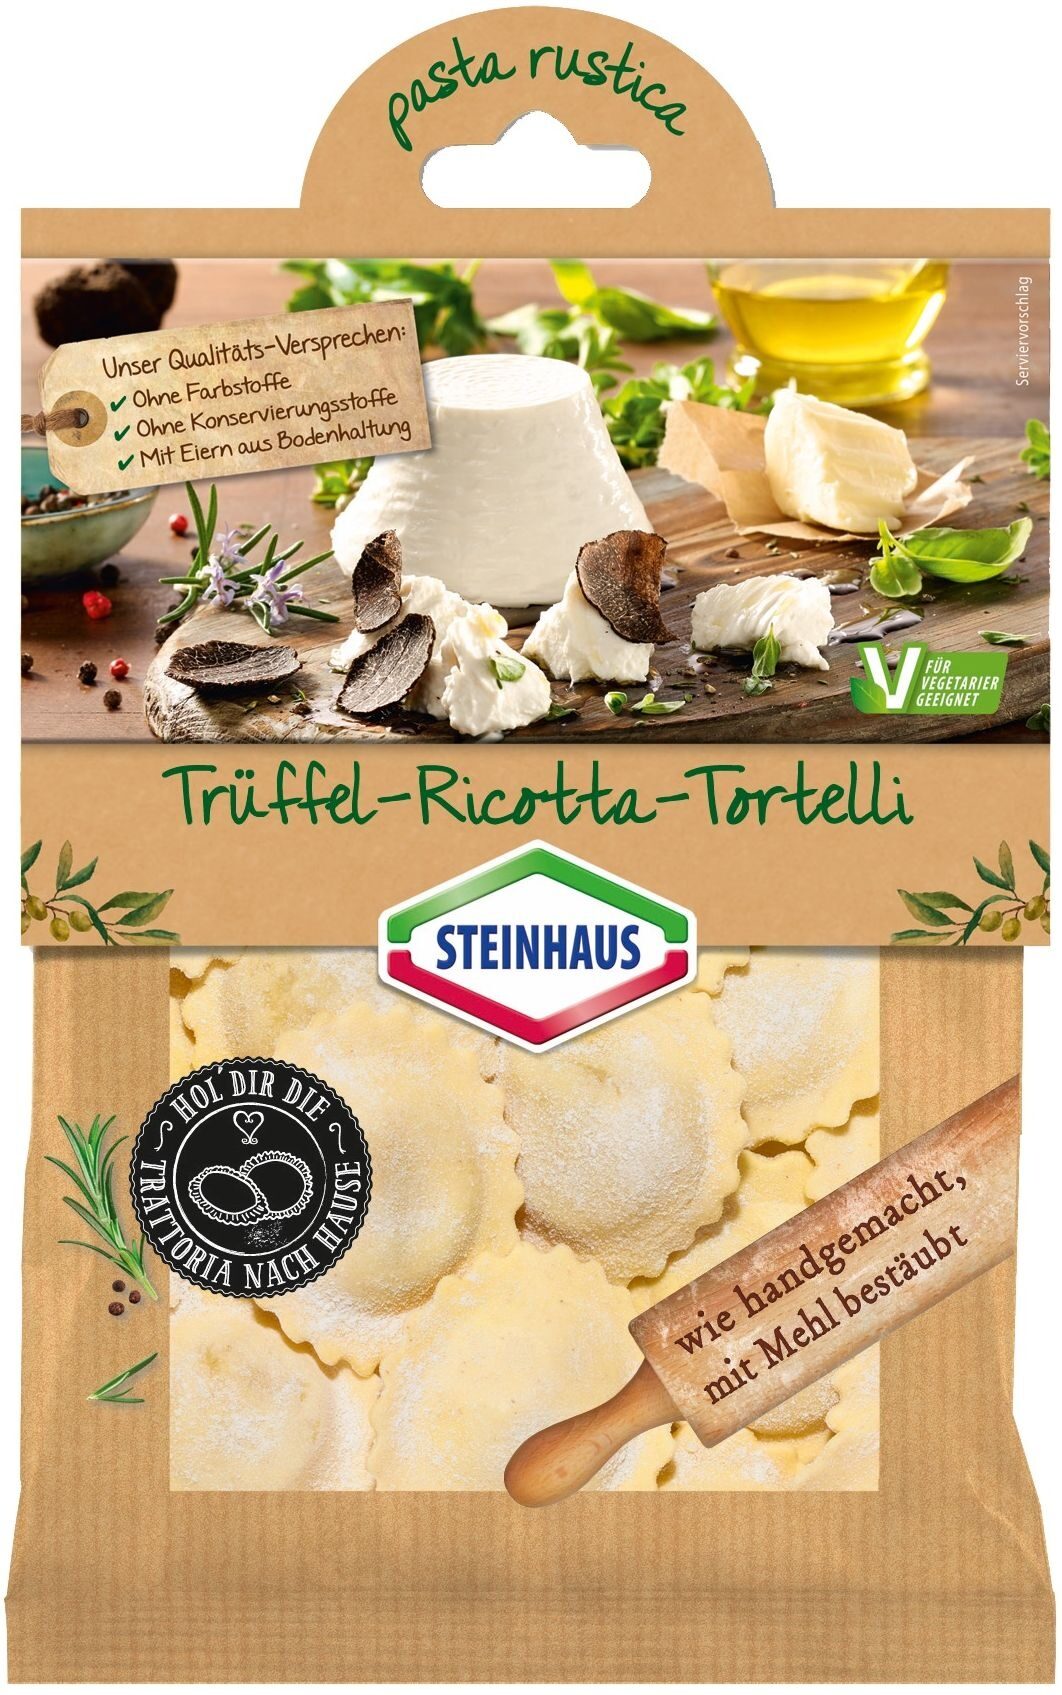 Trüffel-Ricotta-Tortelli - Product - de